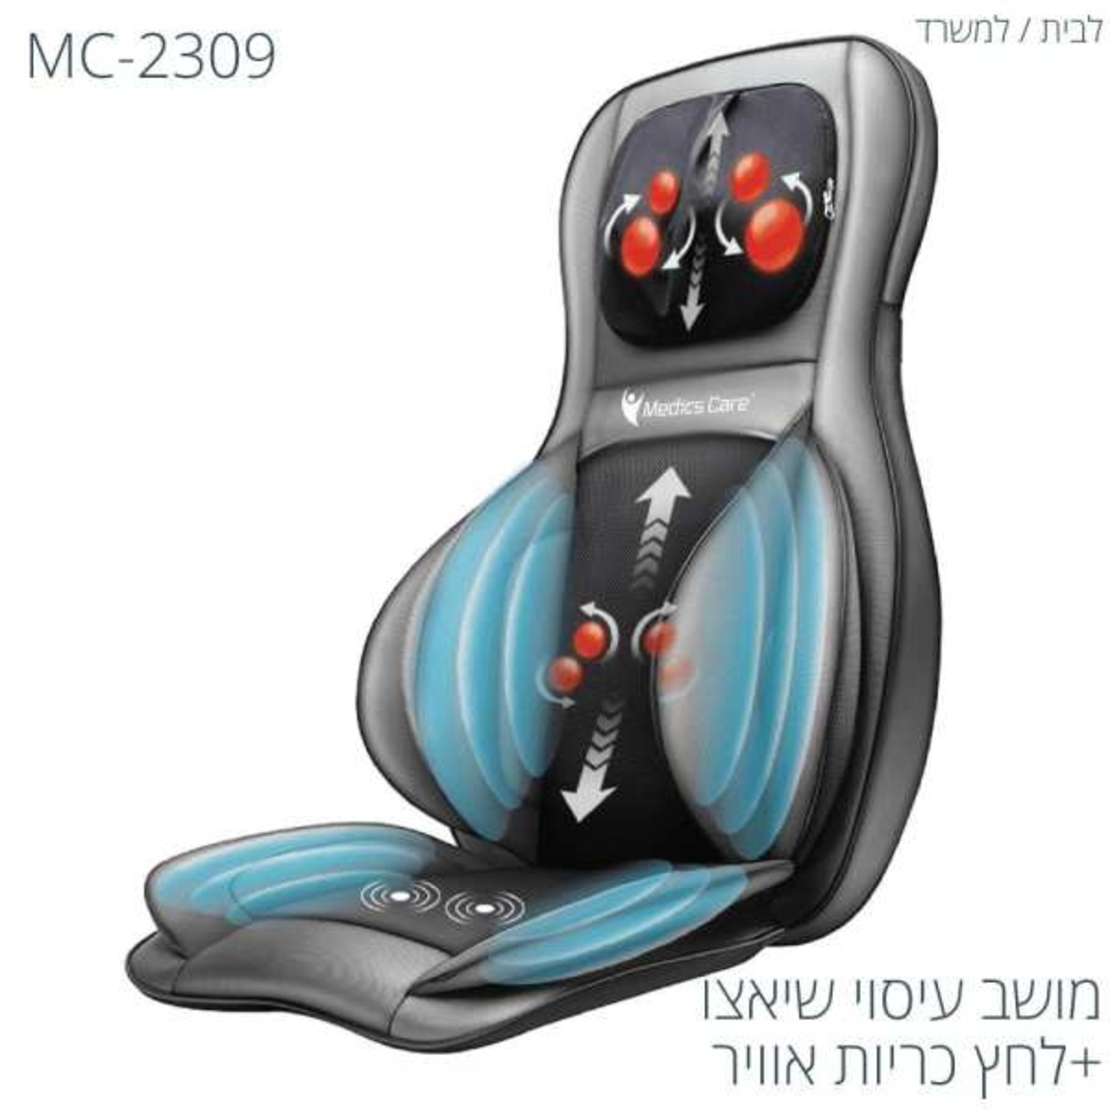 מולטי מושב עיסוי שיאצו מולטיפונקציונלי + כריות אוויר MC-2309 מבית Medics Care